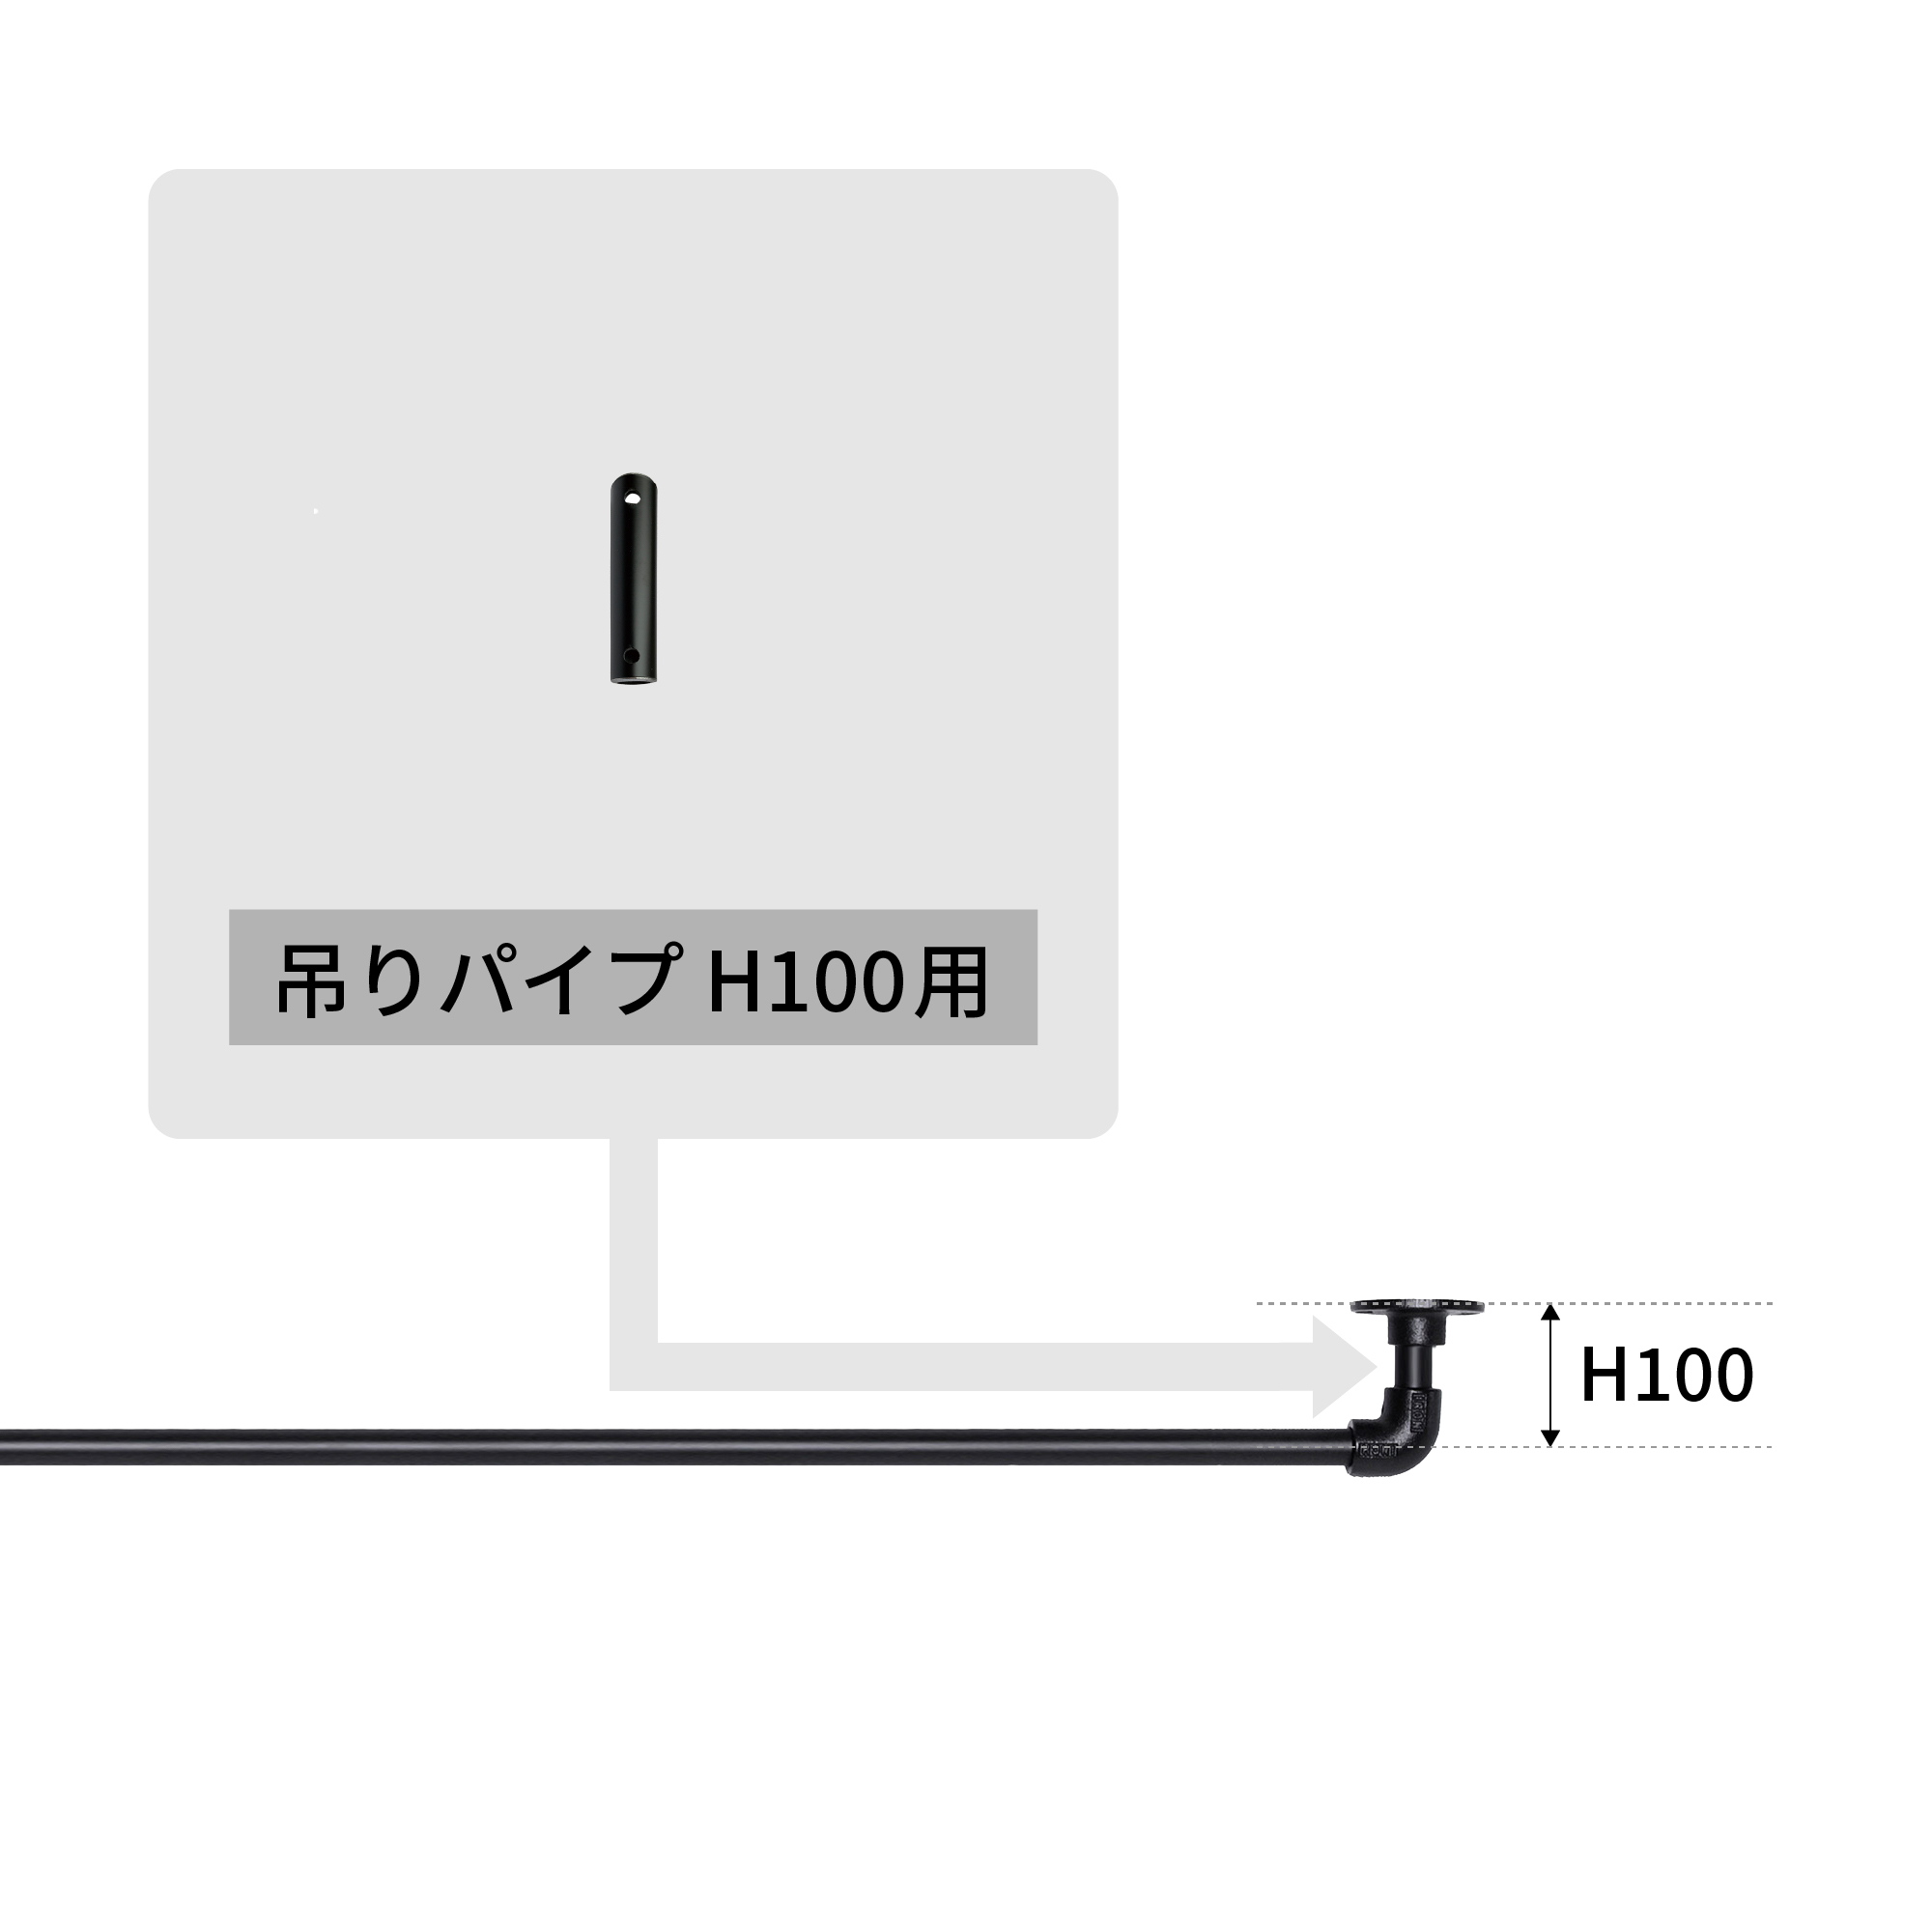 アイアンハンガーパイプ 吊りパイプ H100用 ホワイト PS-HB008-28-G141